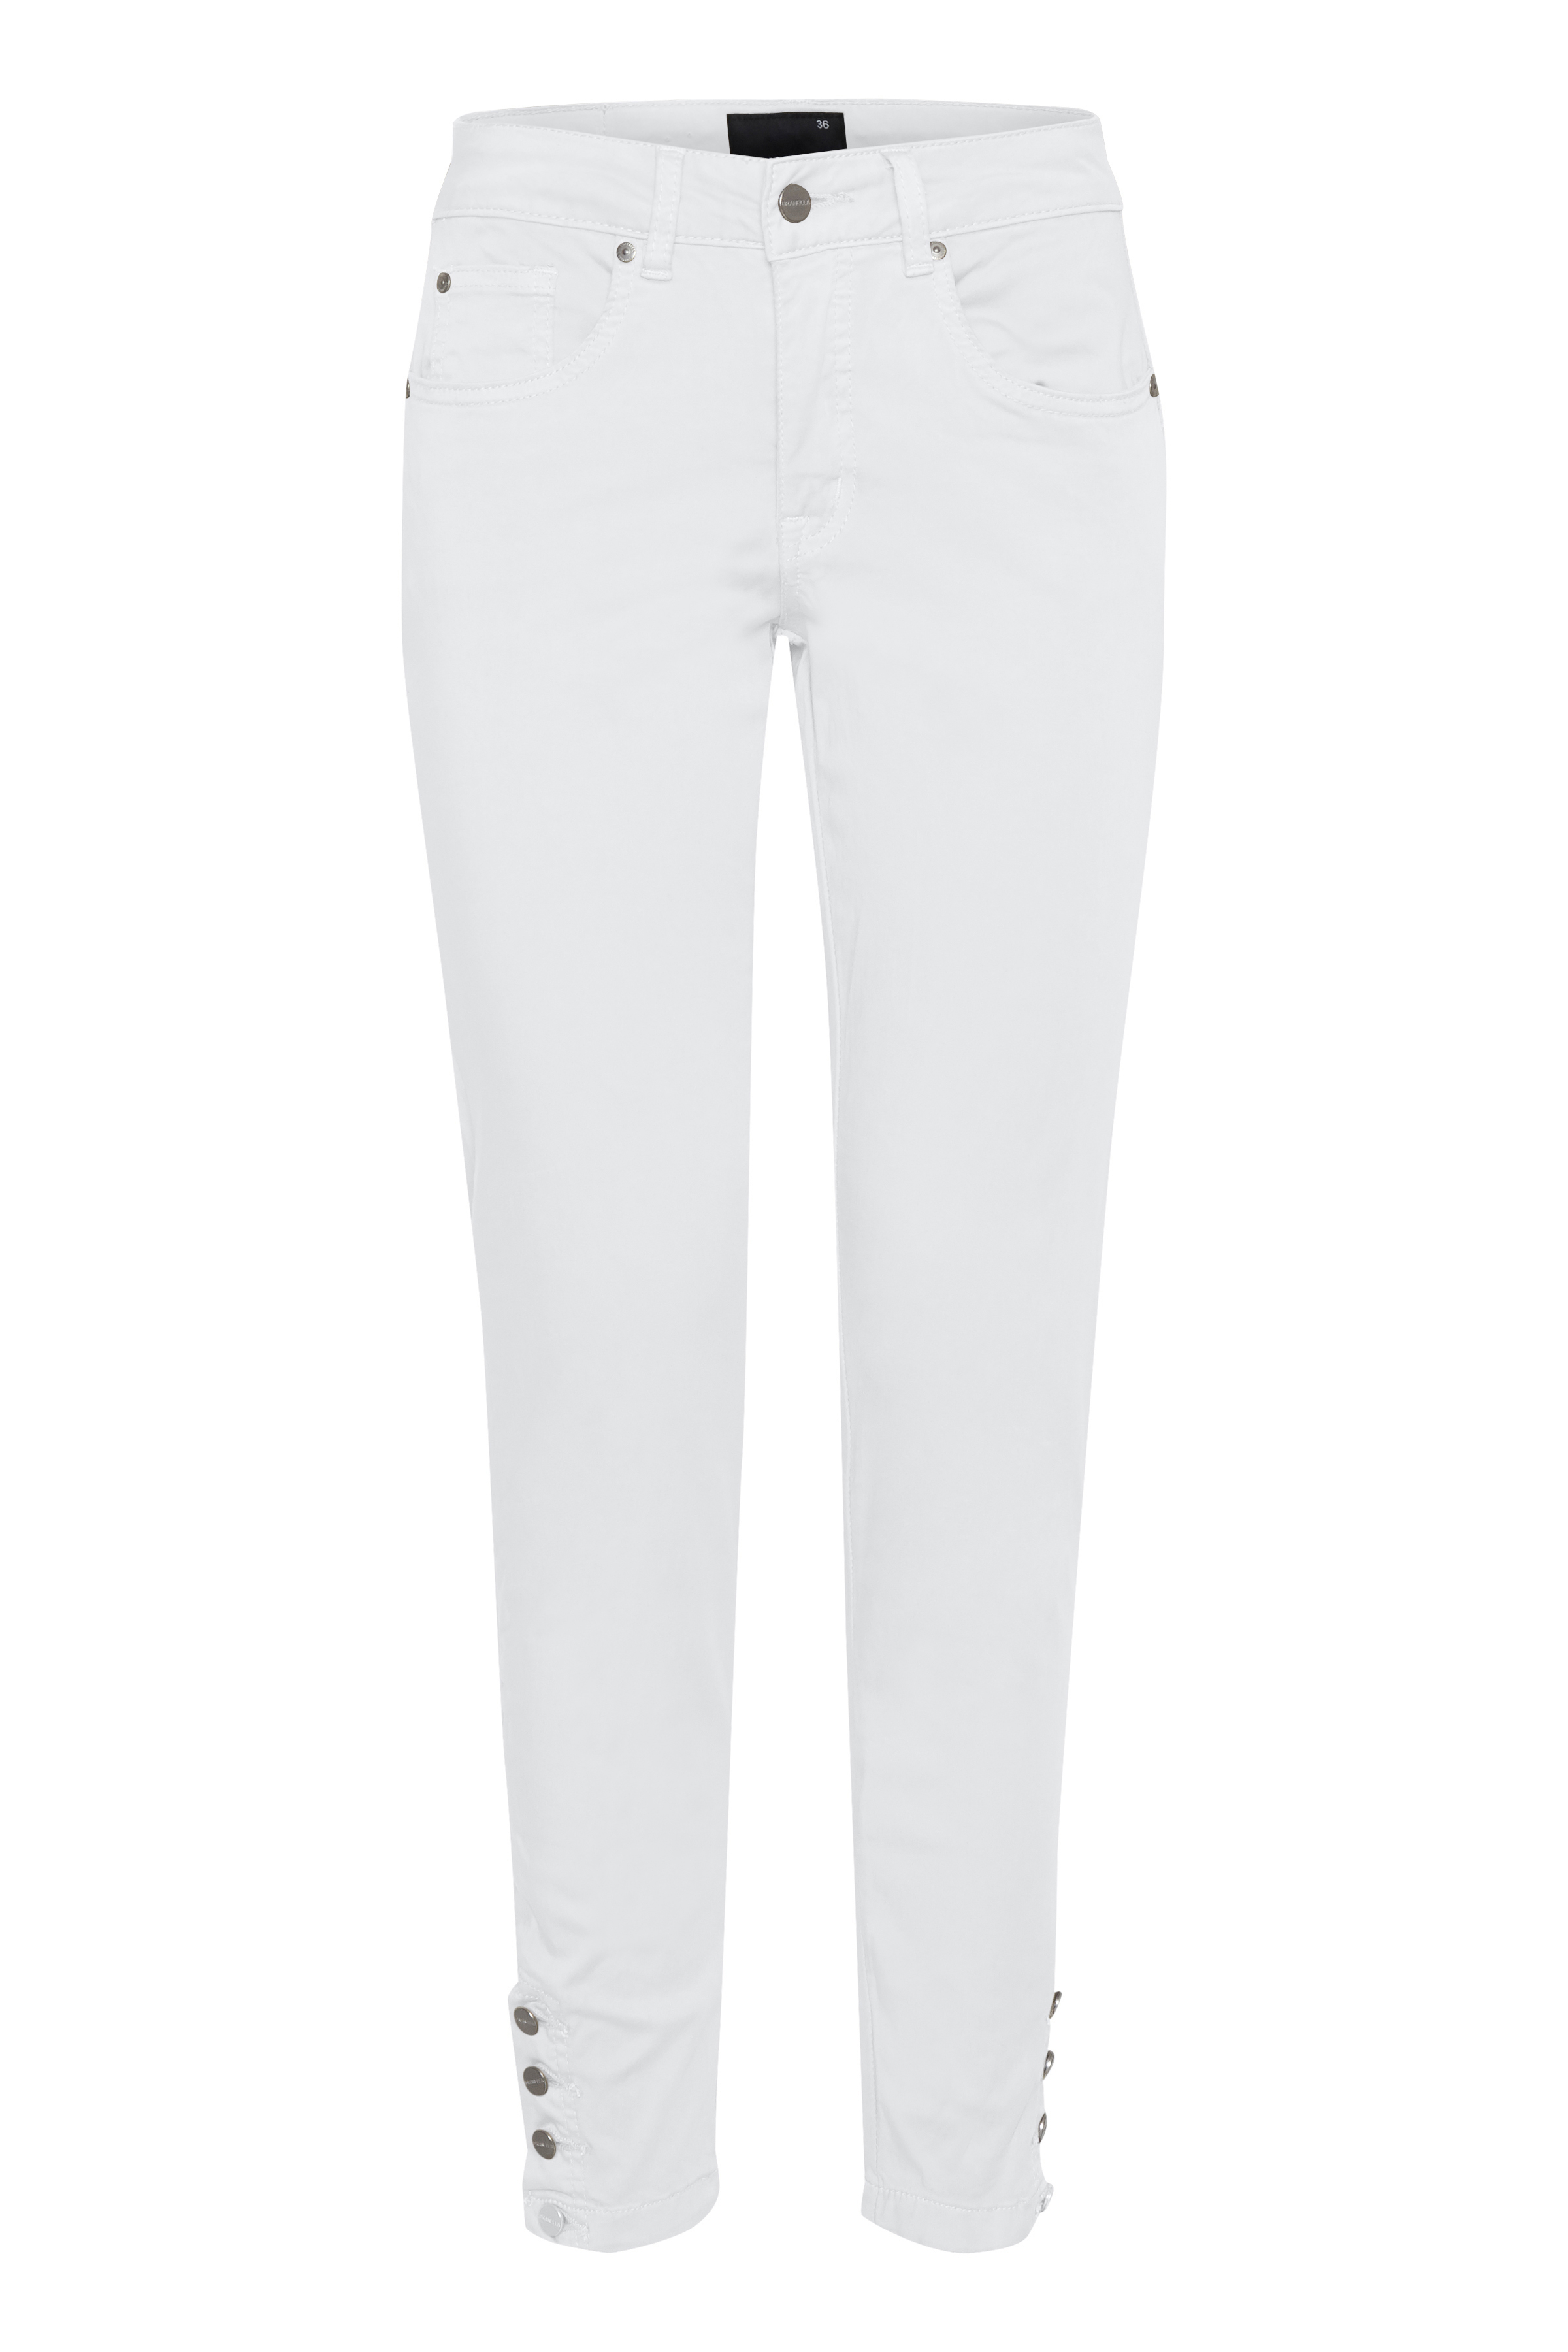 Dranella Dame 5-lommet bløde bukser med stretch Hvid bukser fra til dame Hvid Pashion.dk